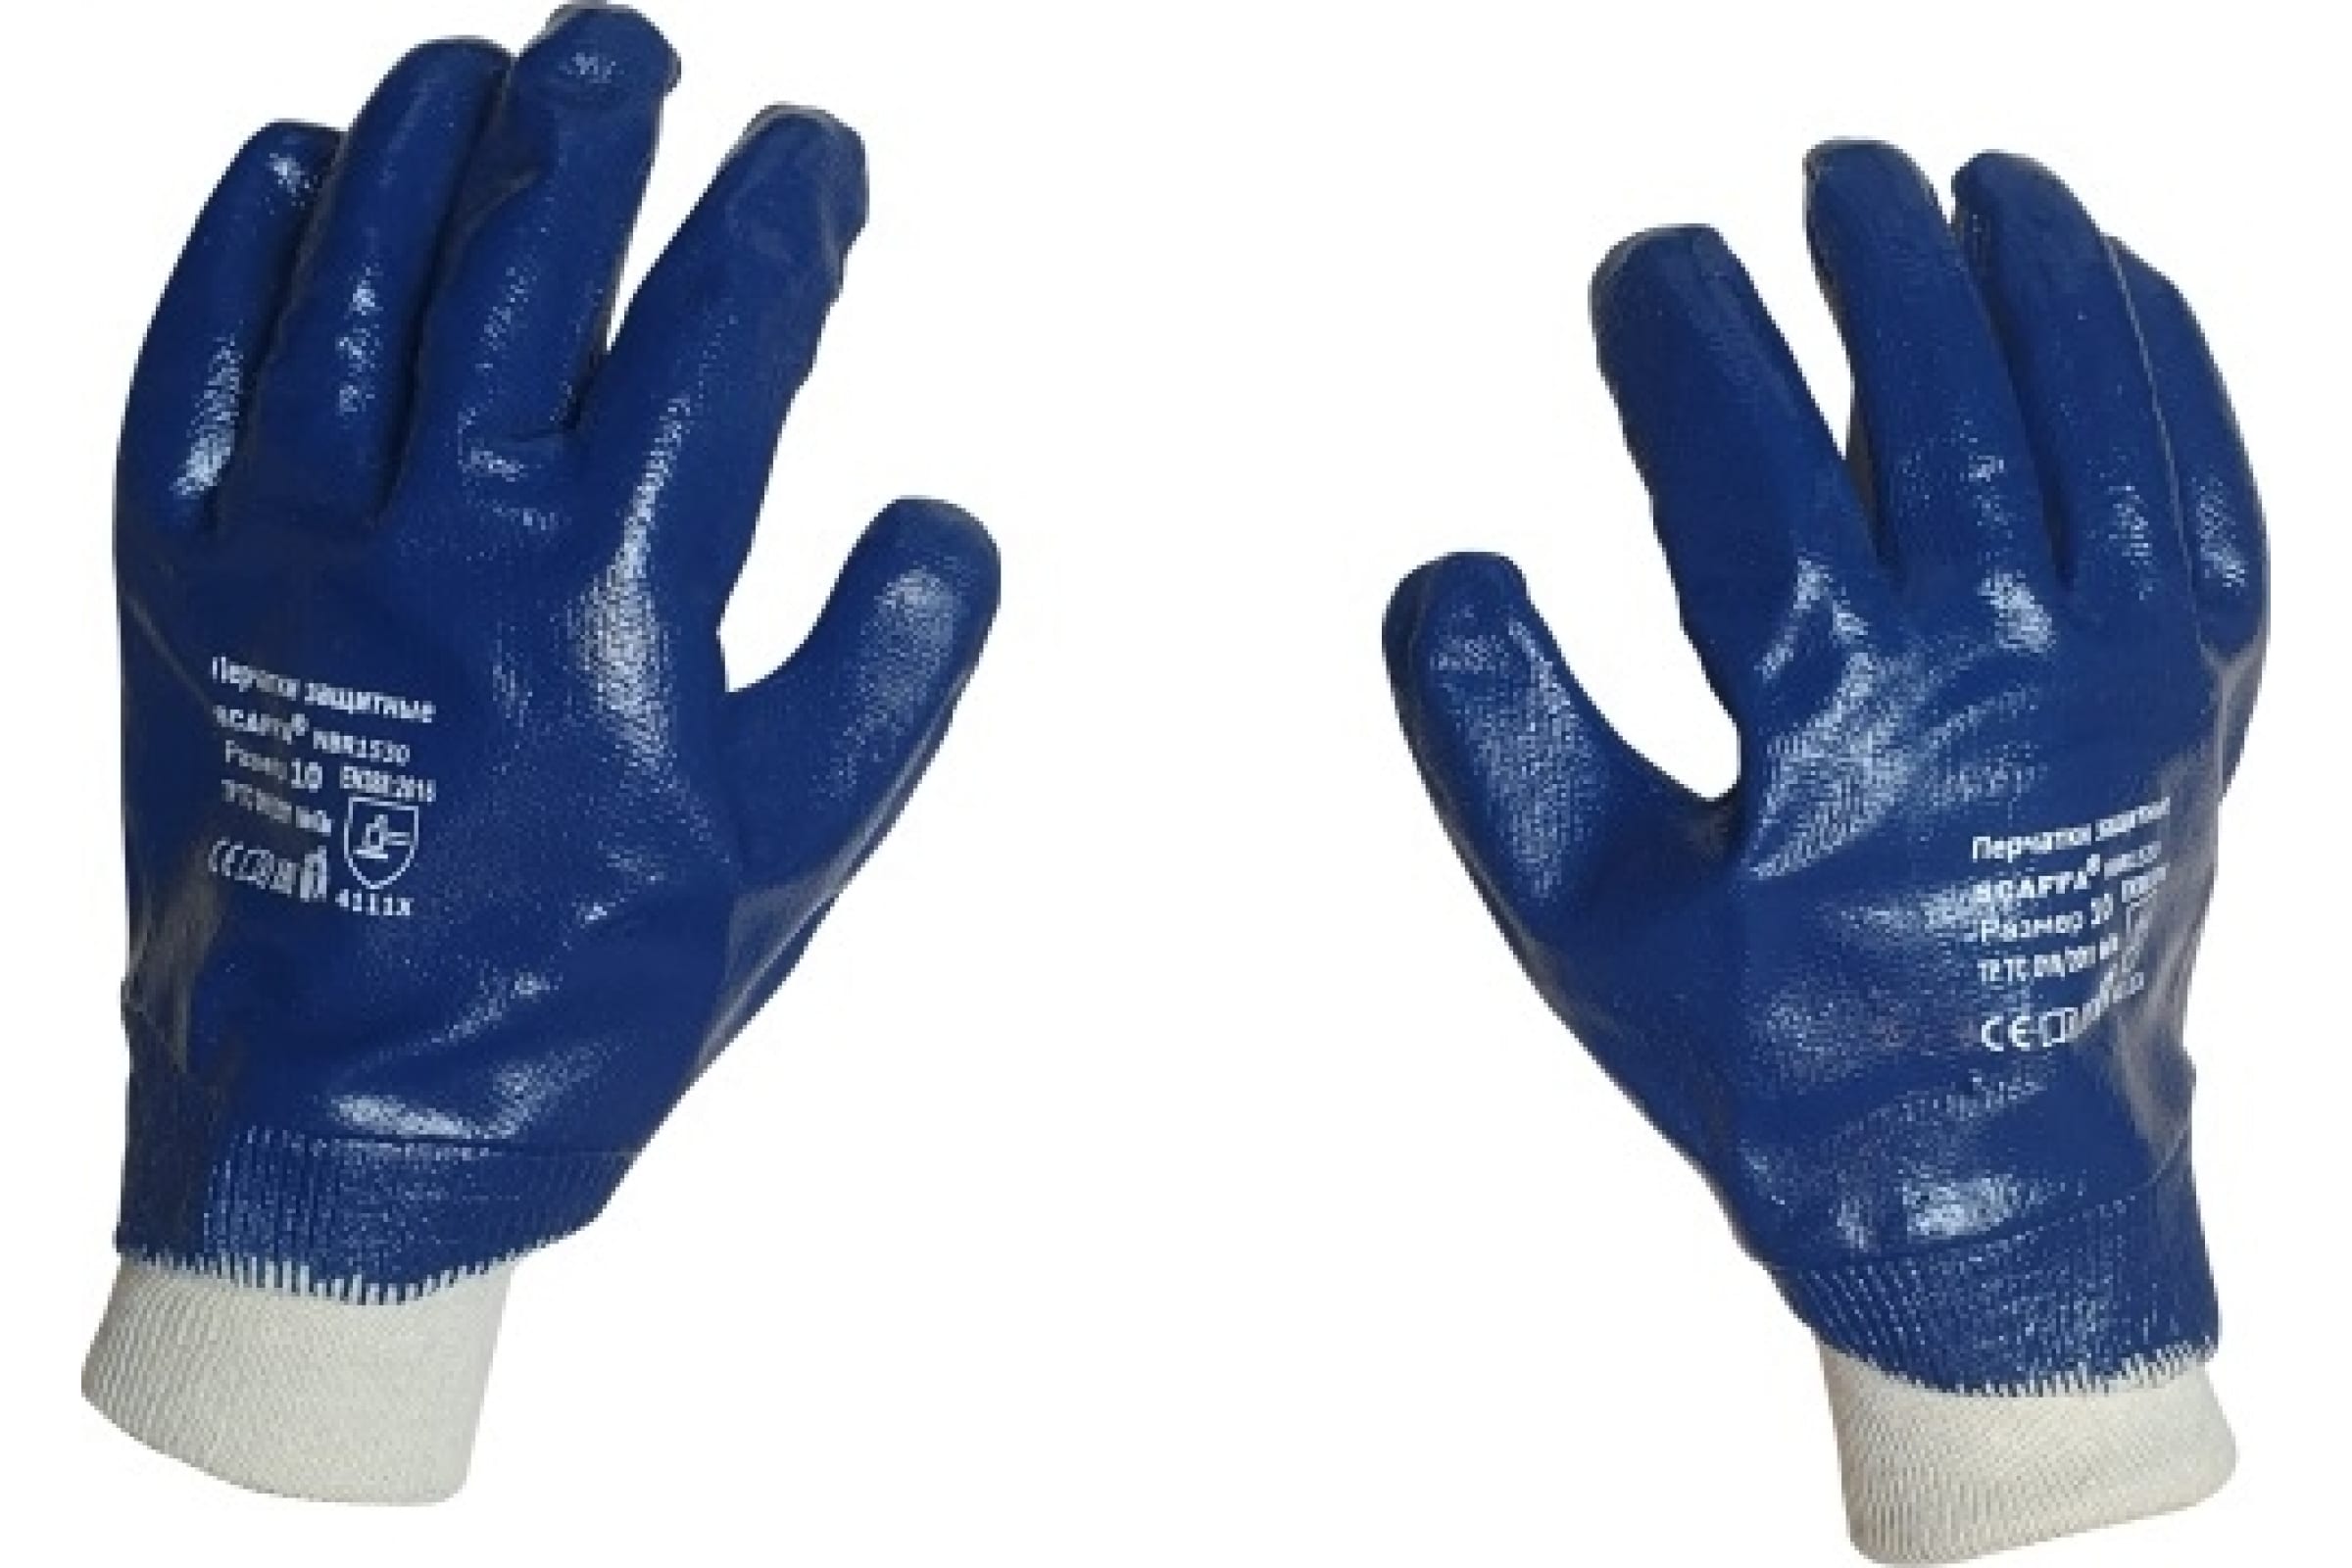 Scaffa перчатки с полным нитриловым обливом NBR1530 размер 10 00-00012457 перчатки с полным нитриловым обливом scaffa nbr1515 9